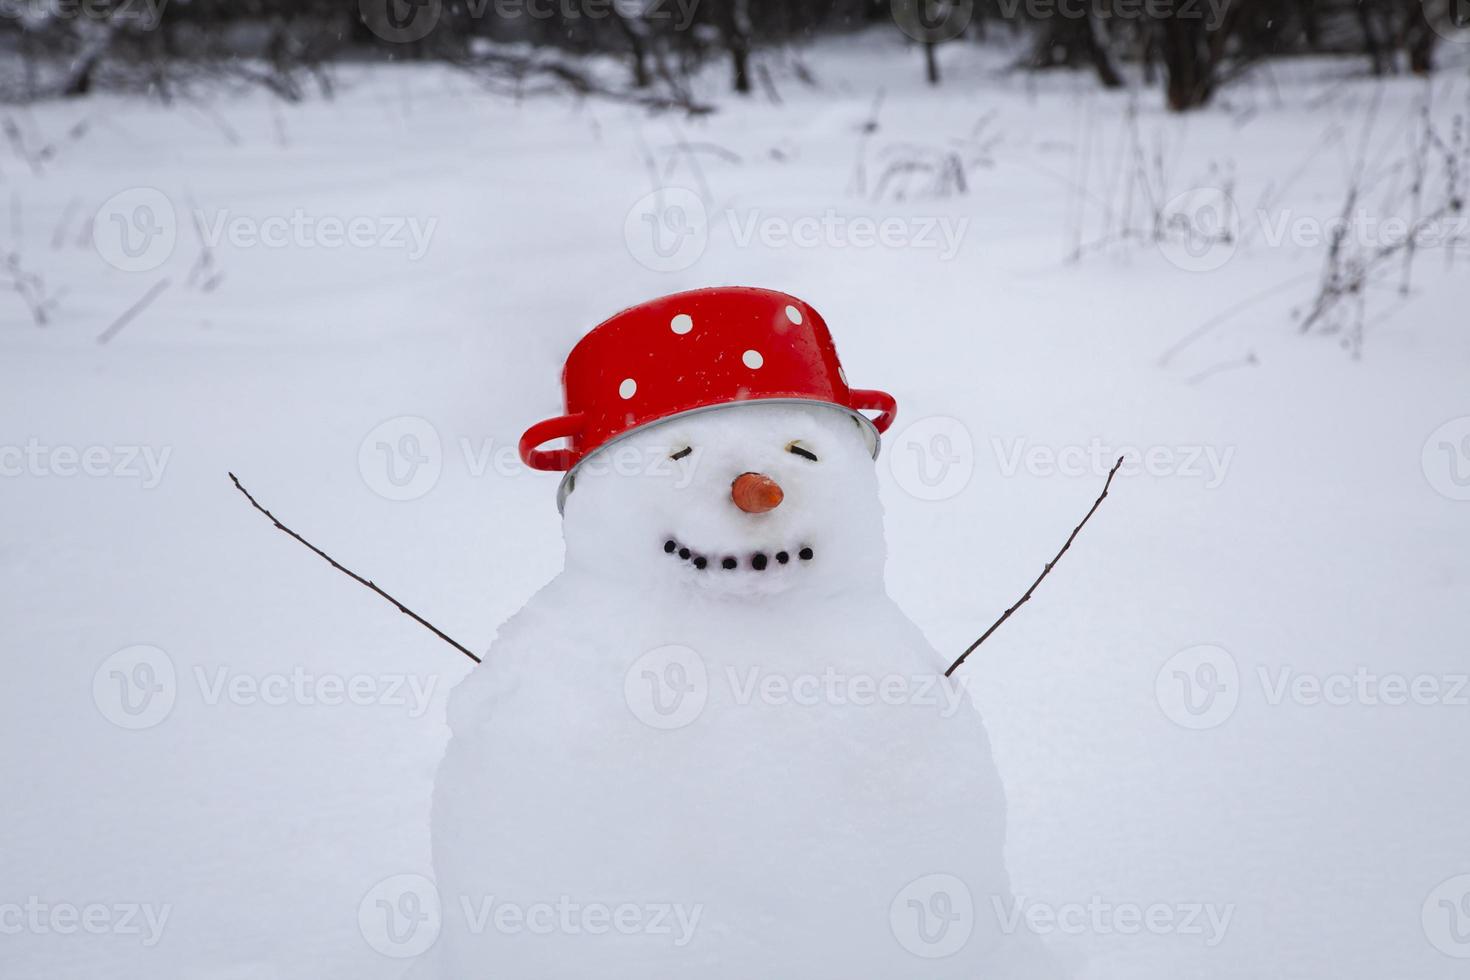 divertido muñeco de nieve en una olla de sopa roja con puntos blancos en lugar de un sombrero, un lindo muñeco de nieve se encuentra en un pueblo de invierno, árboles cubiertos de nieve foto